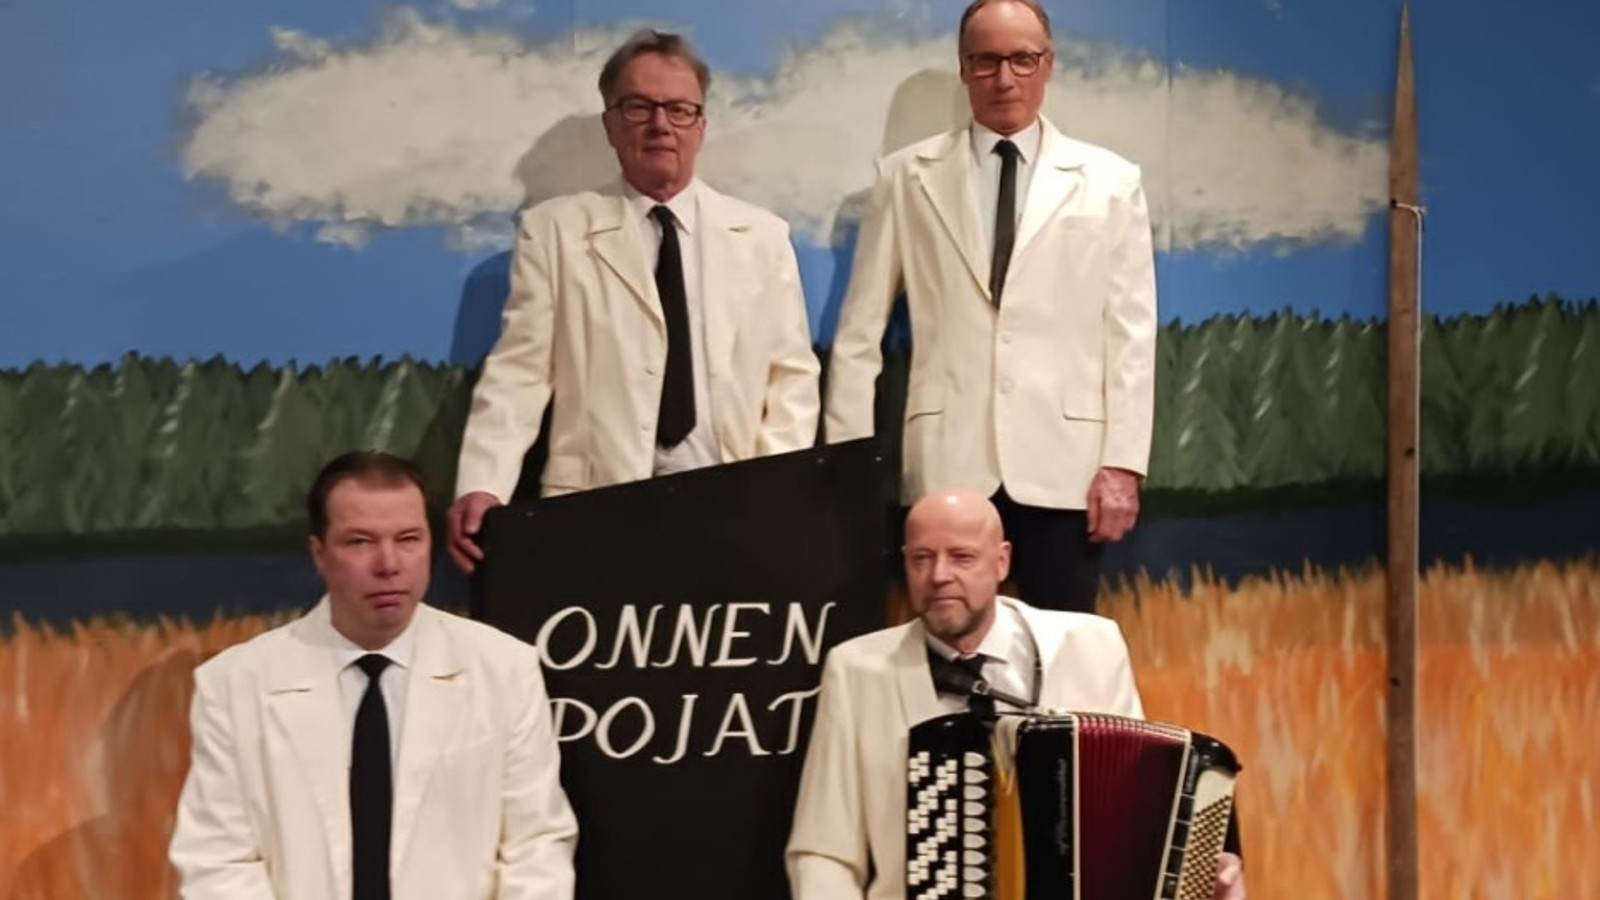 Kuvassa on orkesterin neljä miestä kahdessa rivissä valkoisissa takeissa ja heidän välissään lukee orkesterin nimi Onnen Pojat.